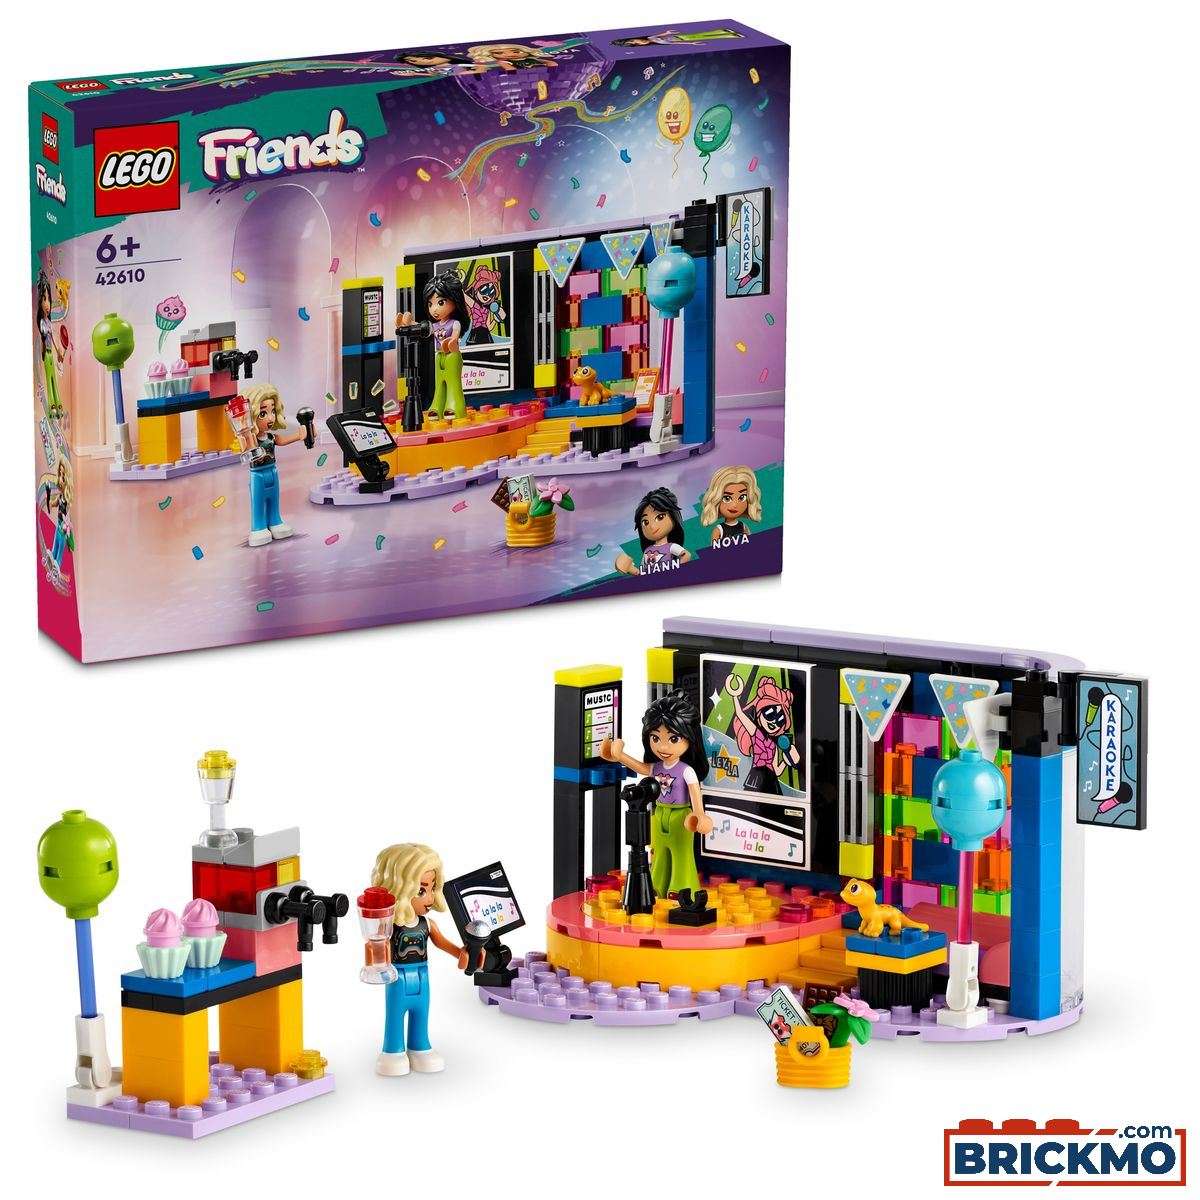 LEGO Friends 42610 Karaoke Music Party 42610